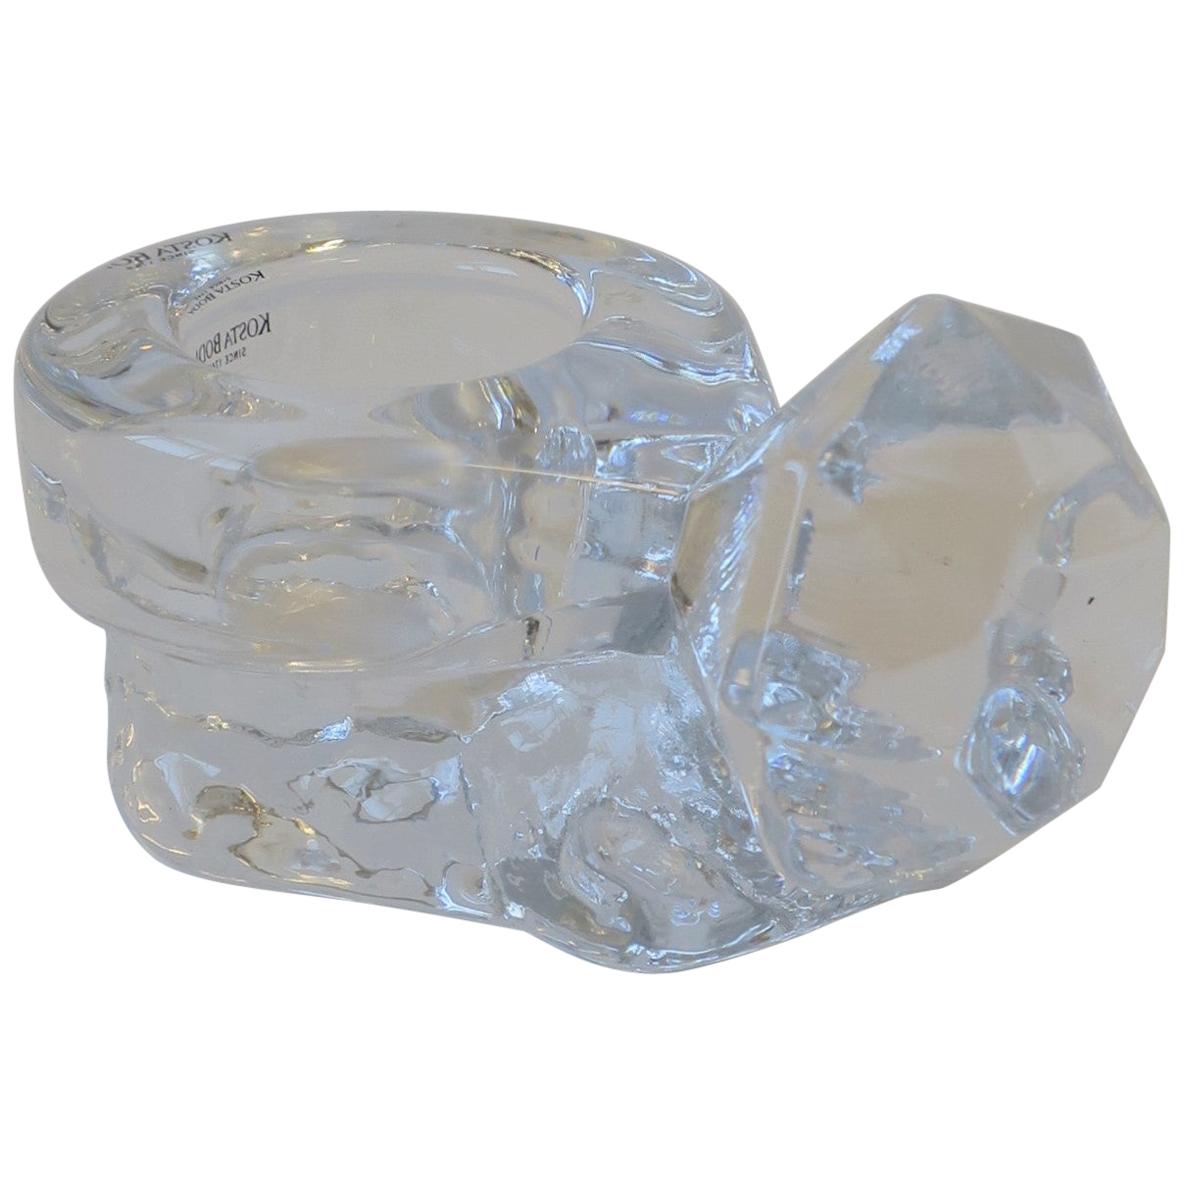 Diamond Ring Crystal Jewelry Dish by Kosta Boda Sweden